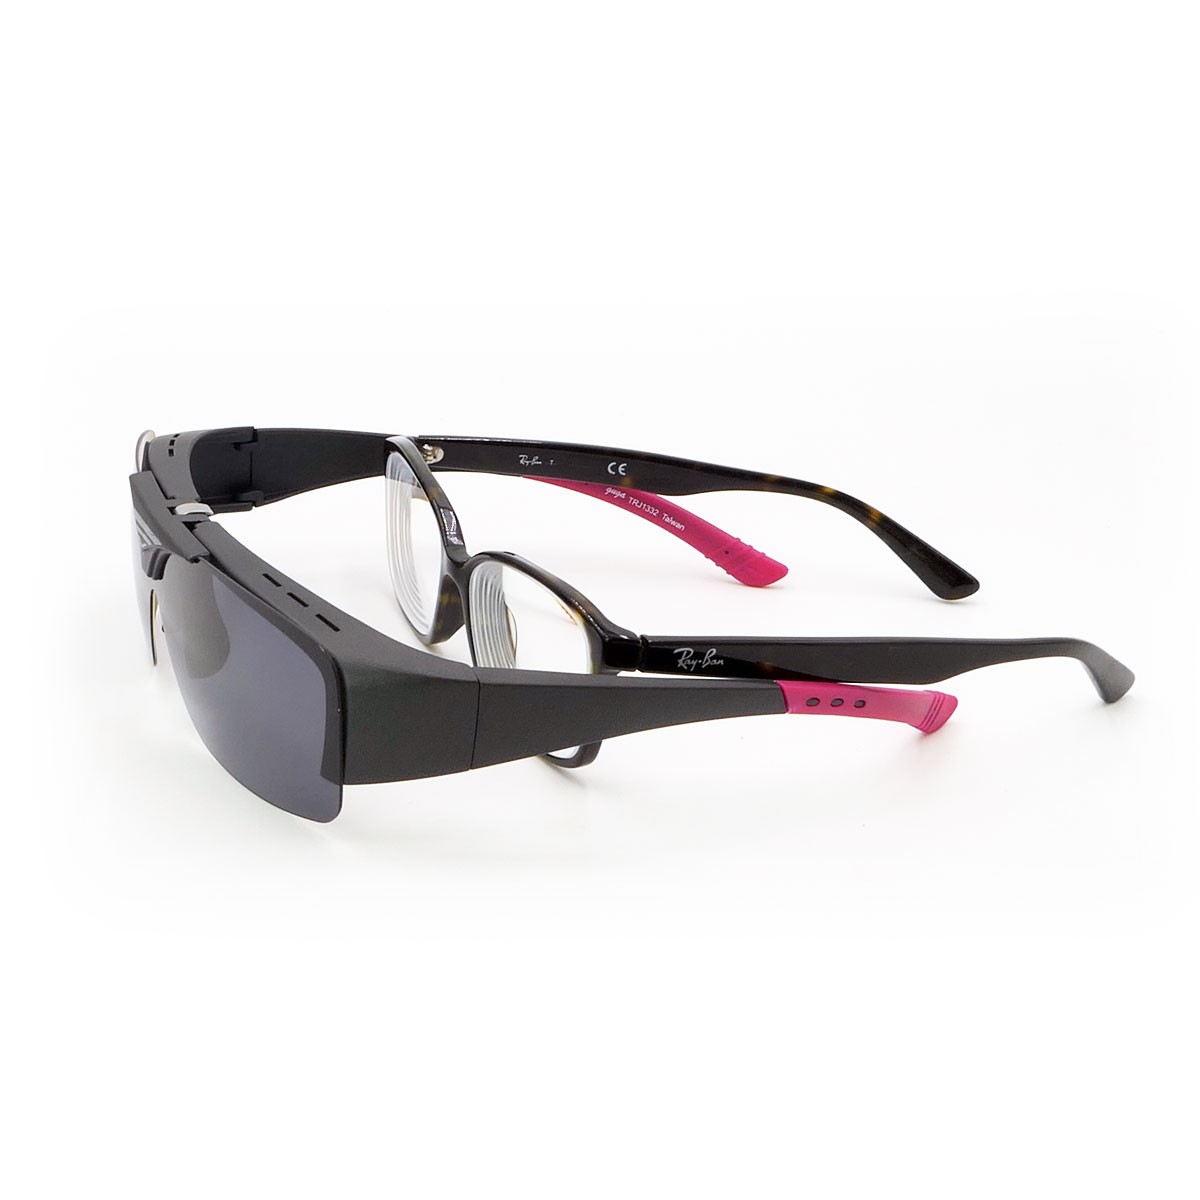 客製化太陽眼鏡, ,鏡片可替換,上掀式偏光套鏡